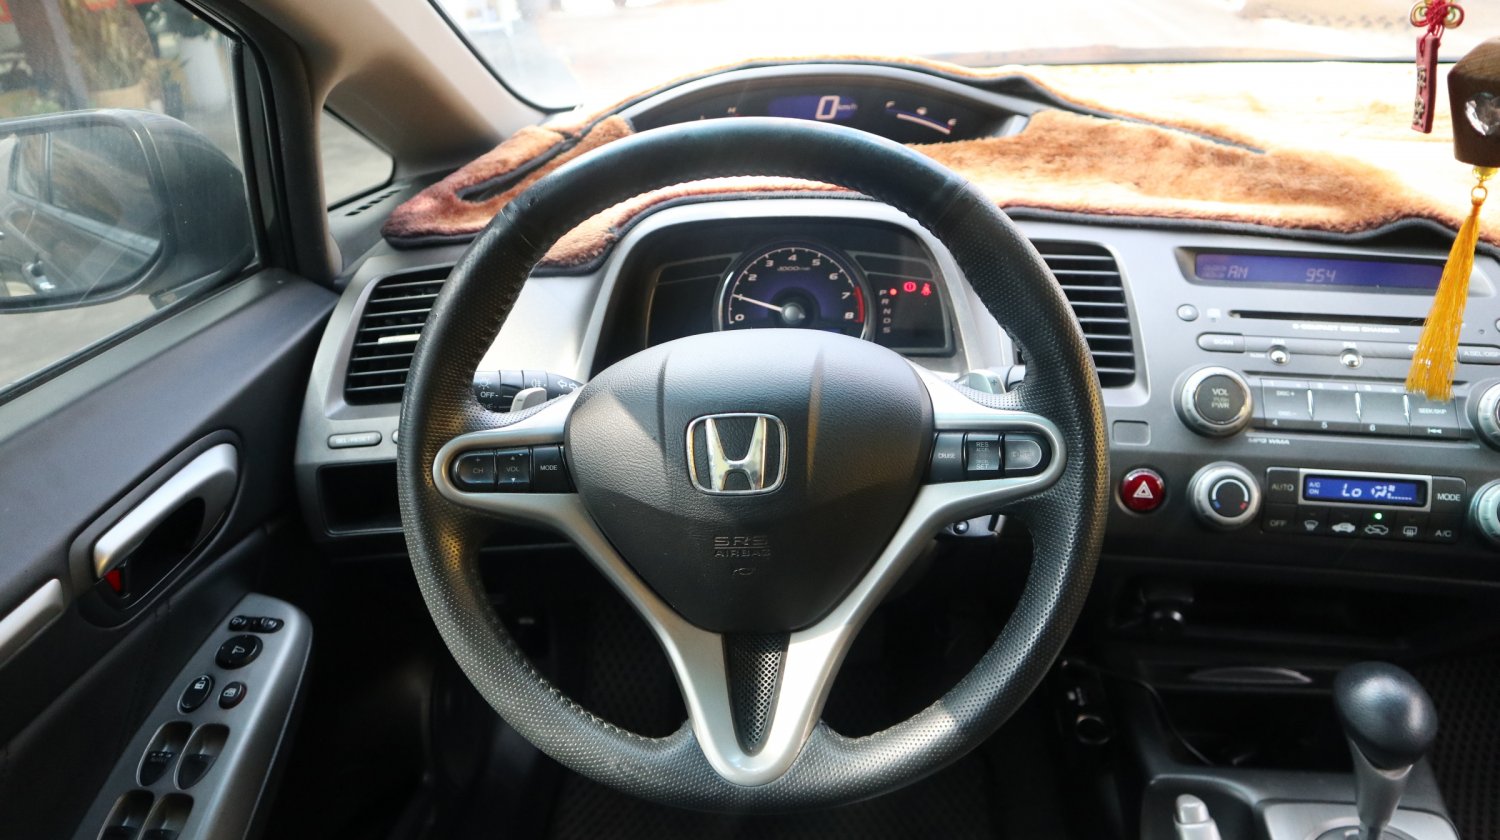 Honda 本田 ／ Civic 喜美 ／ 2011年 ／ 2011年 Honda Civic VTi-S 深灰色 本田中古車 ／ 成交區